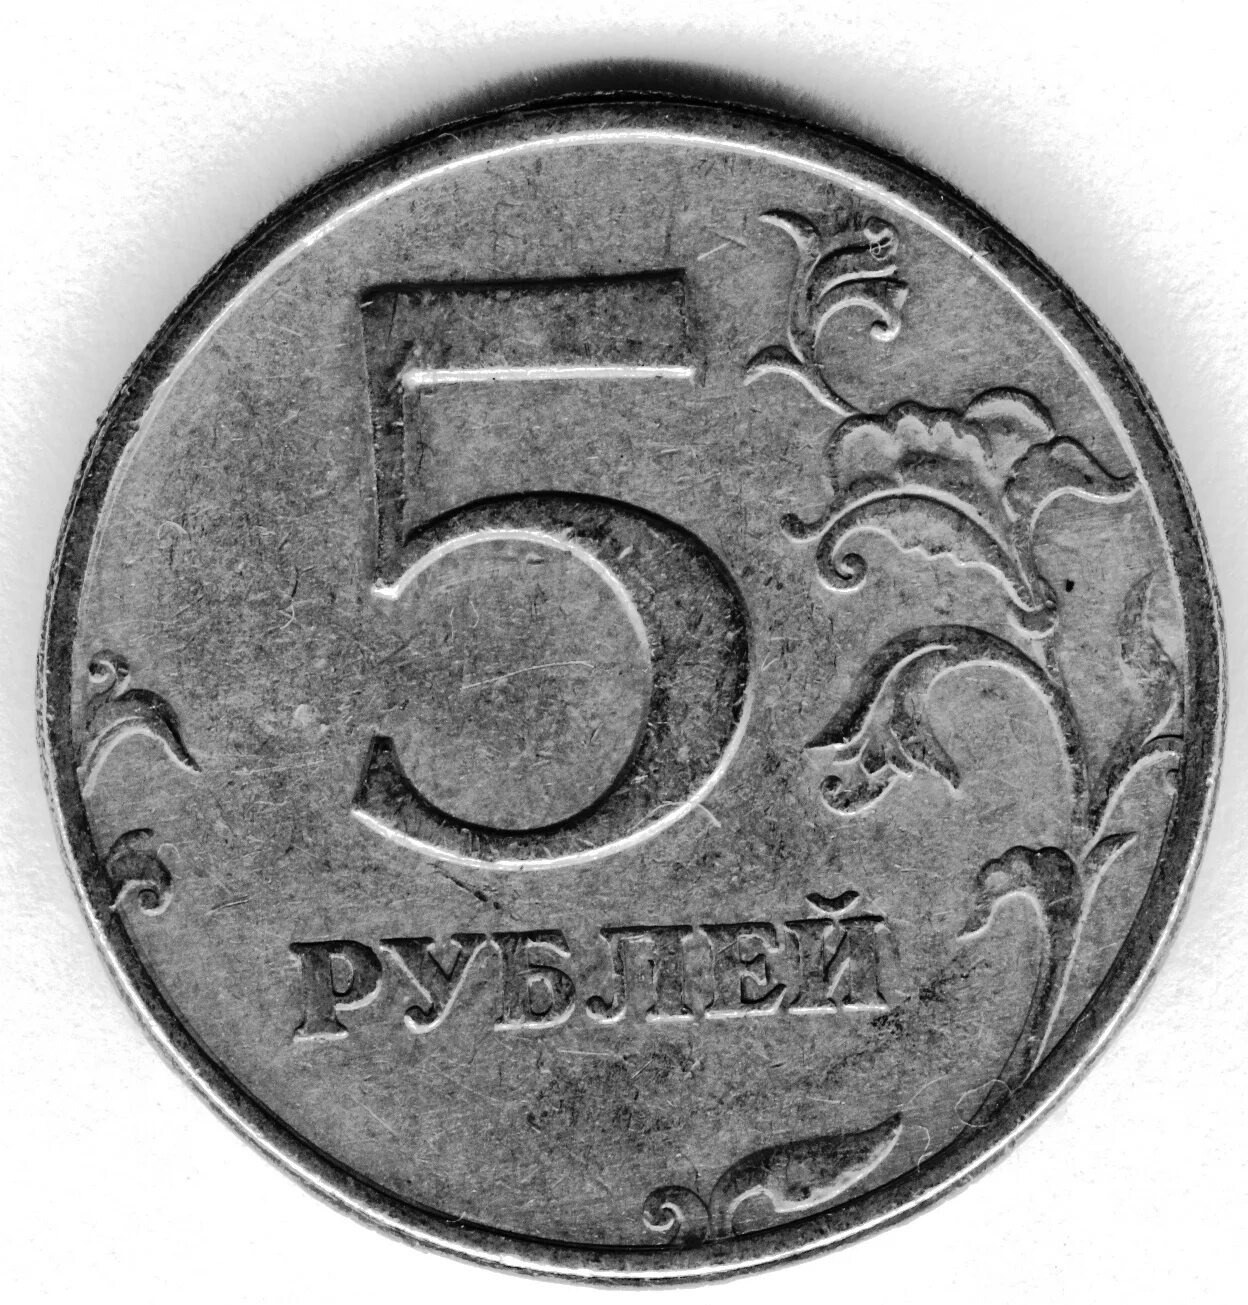 Оценка 5 рублей. 5 Рублей. Монеты 5 рублей современной. Пять рублей. Старые монеты 5 рублей.